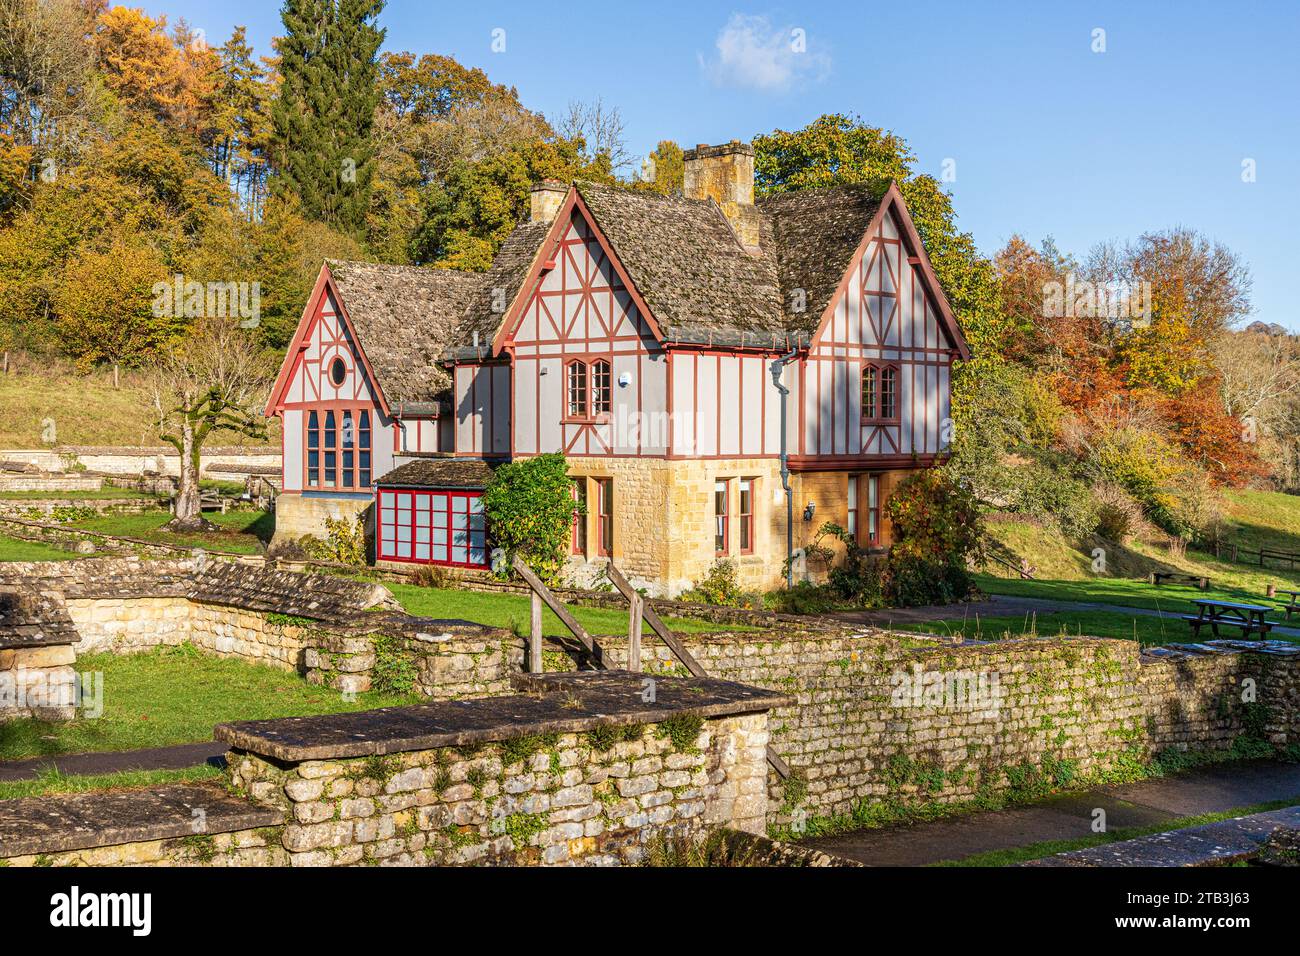 Couleurs d'automne autour du musée à Chedworth Roman Villa près du village Cotswold de Yanworth, Gloucestershire, Angleterre Royaume-Uni Banque D'Images